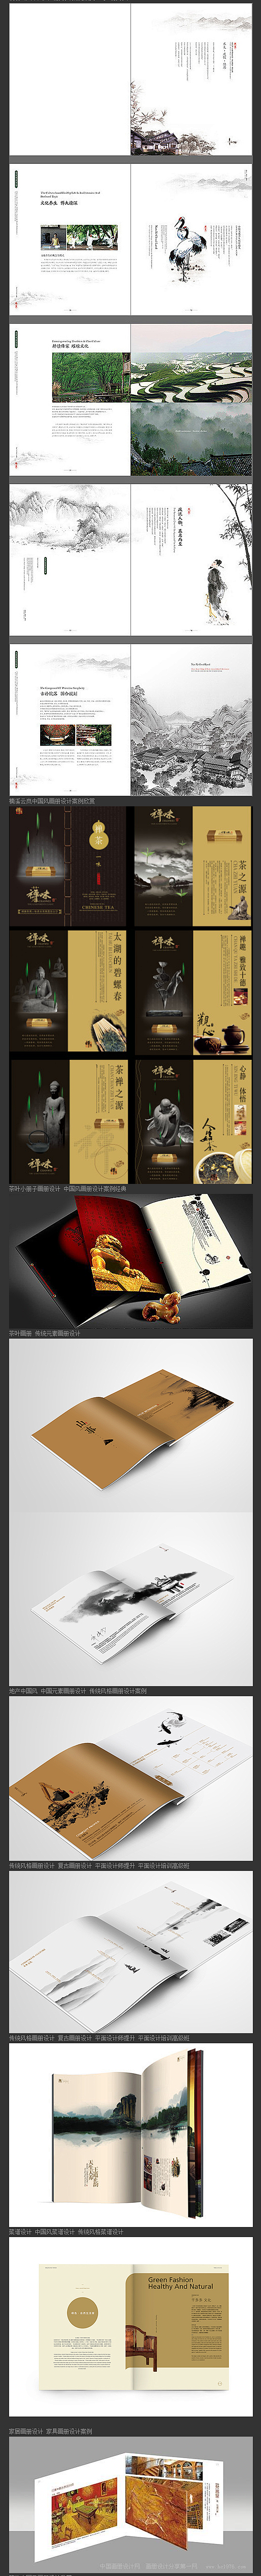 中国风画画册设计 水墨画册设计欣赏 传统...